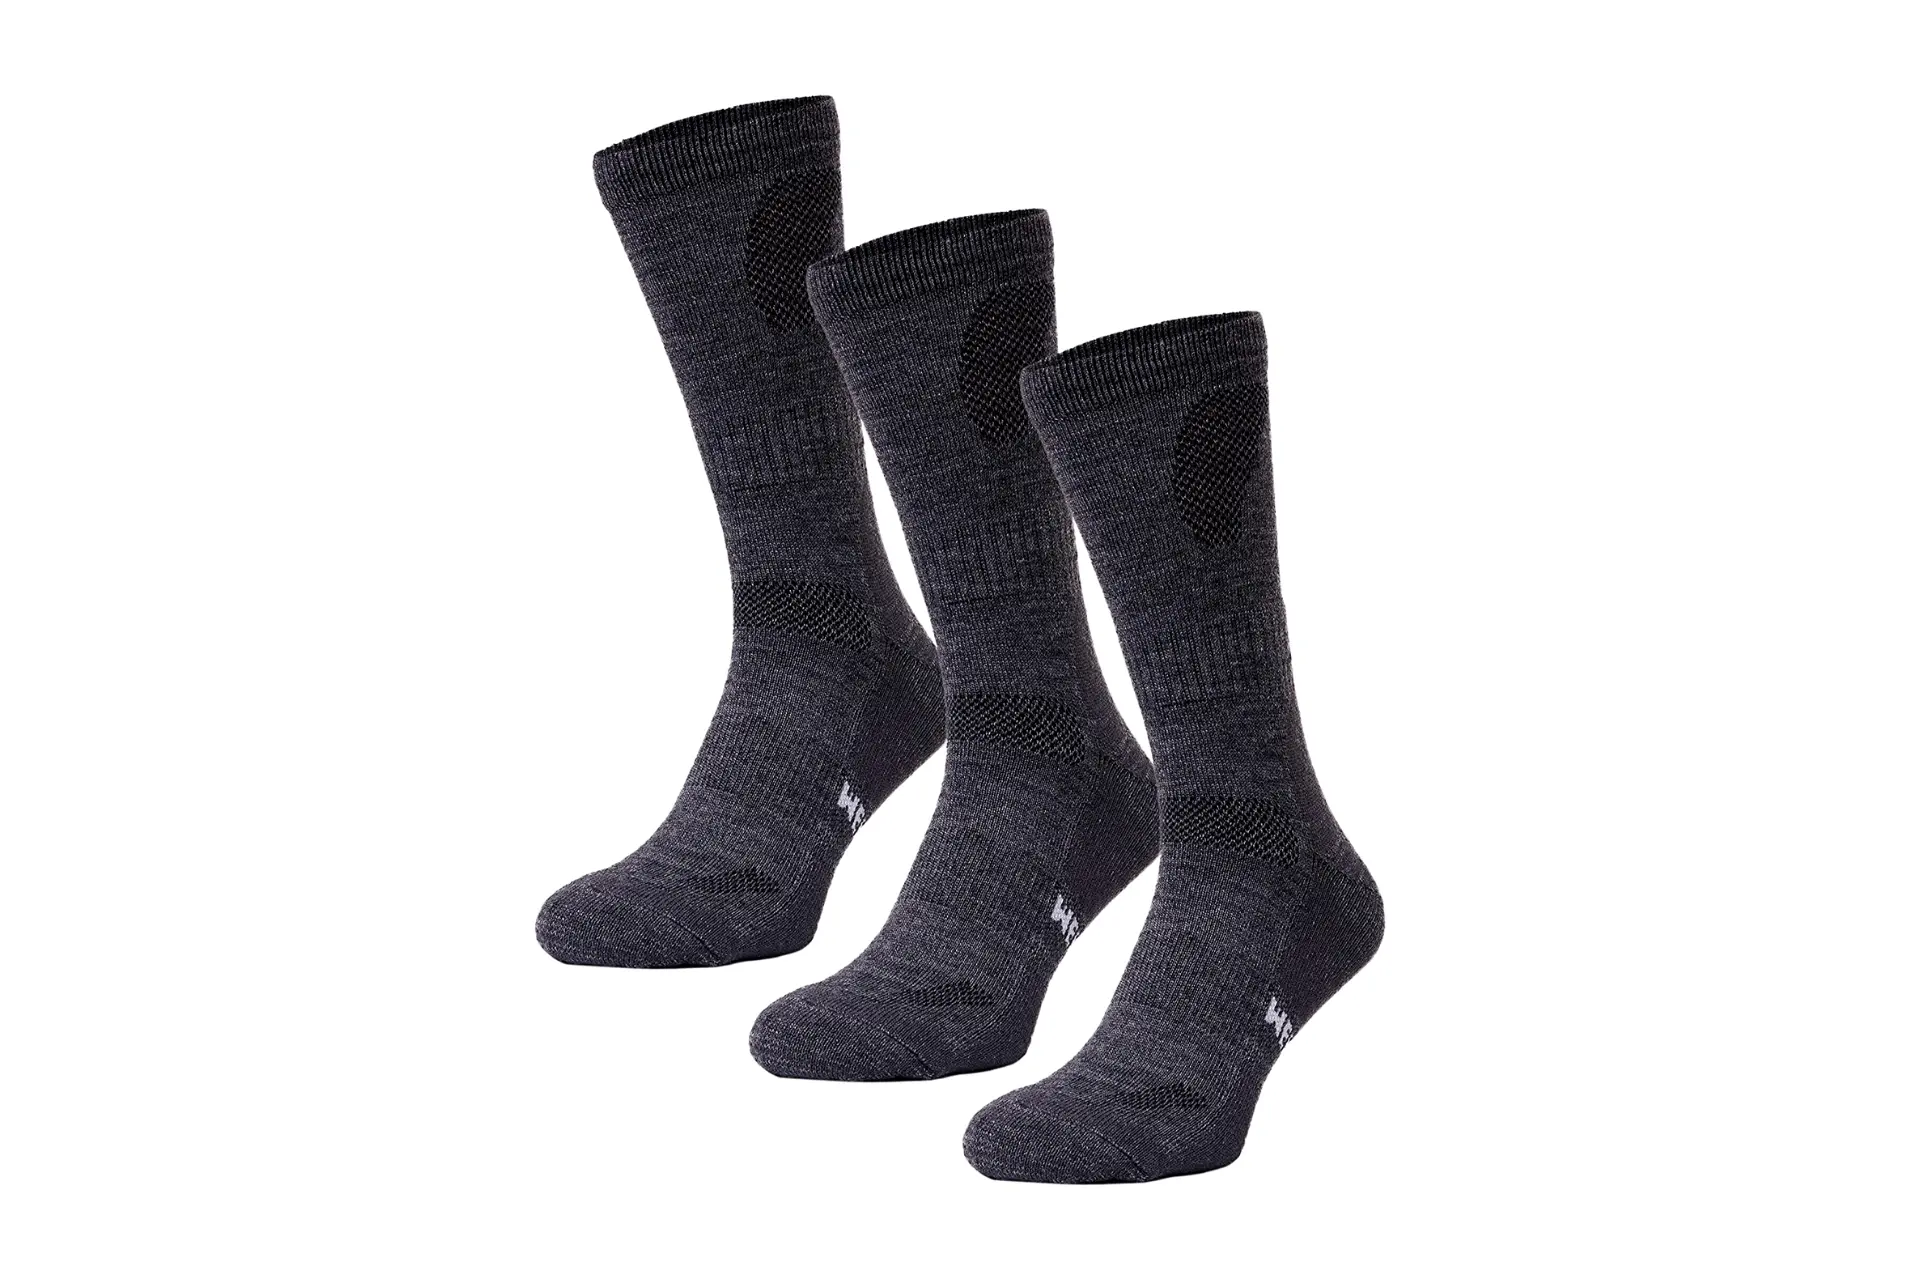 Merino.tech Merino Wool Socks